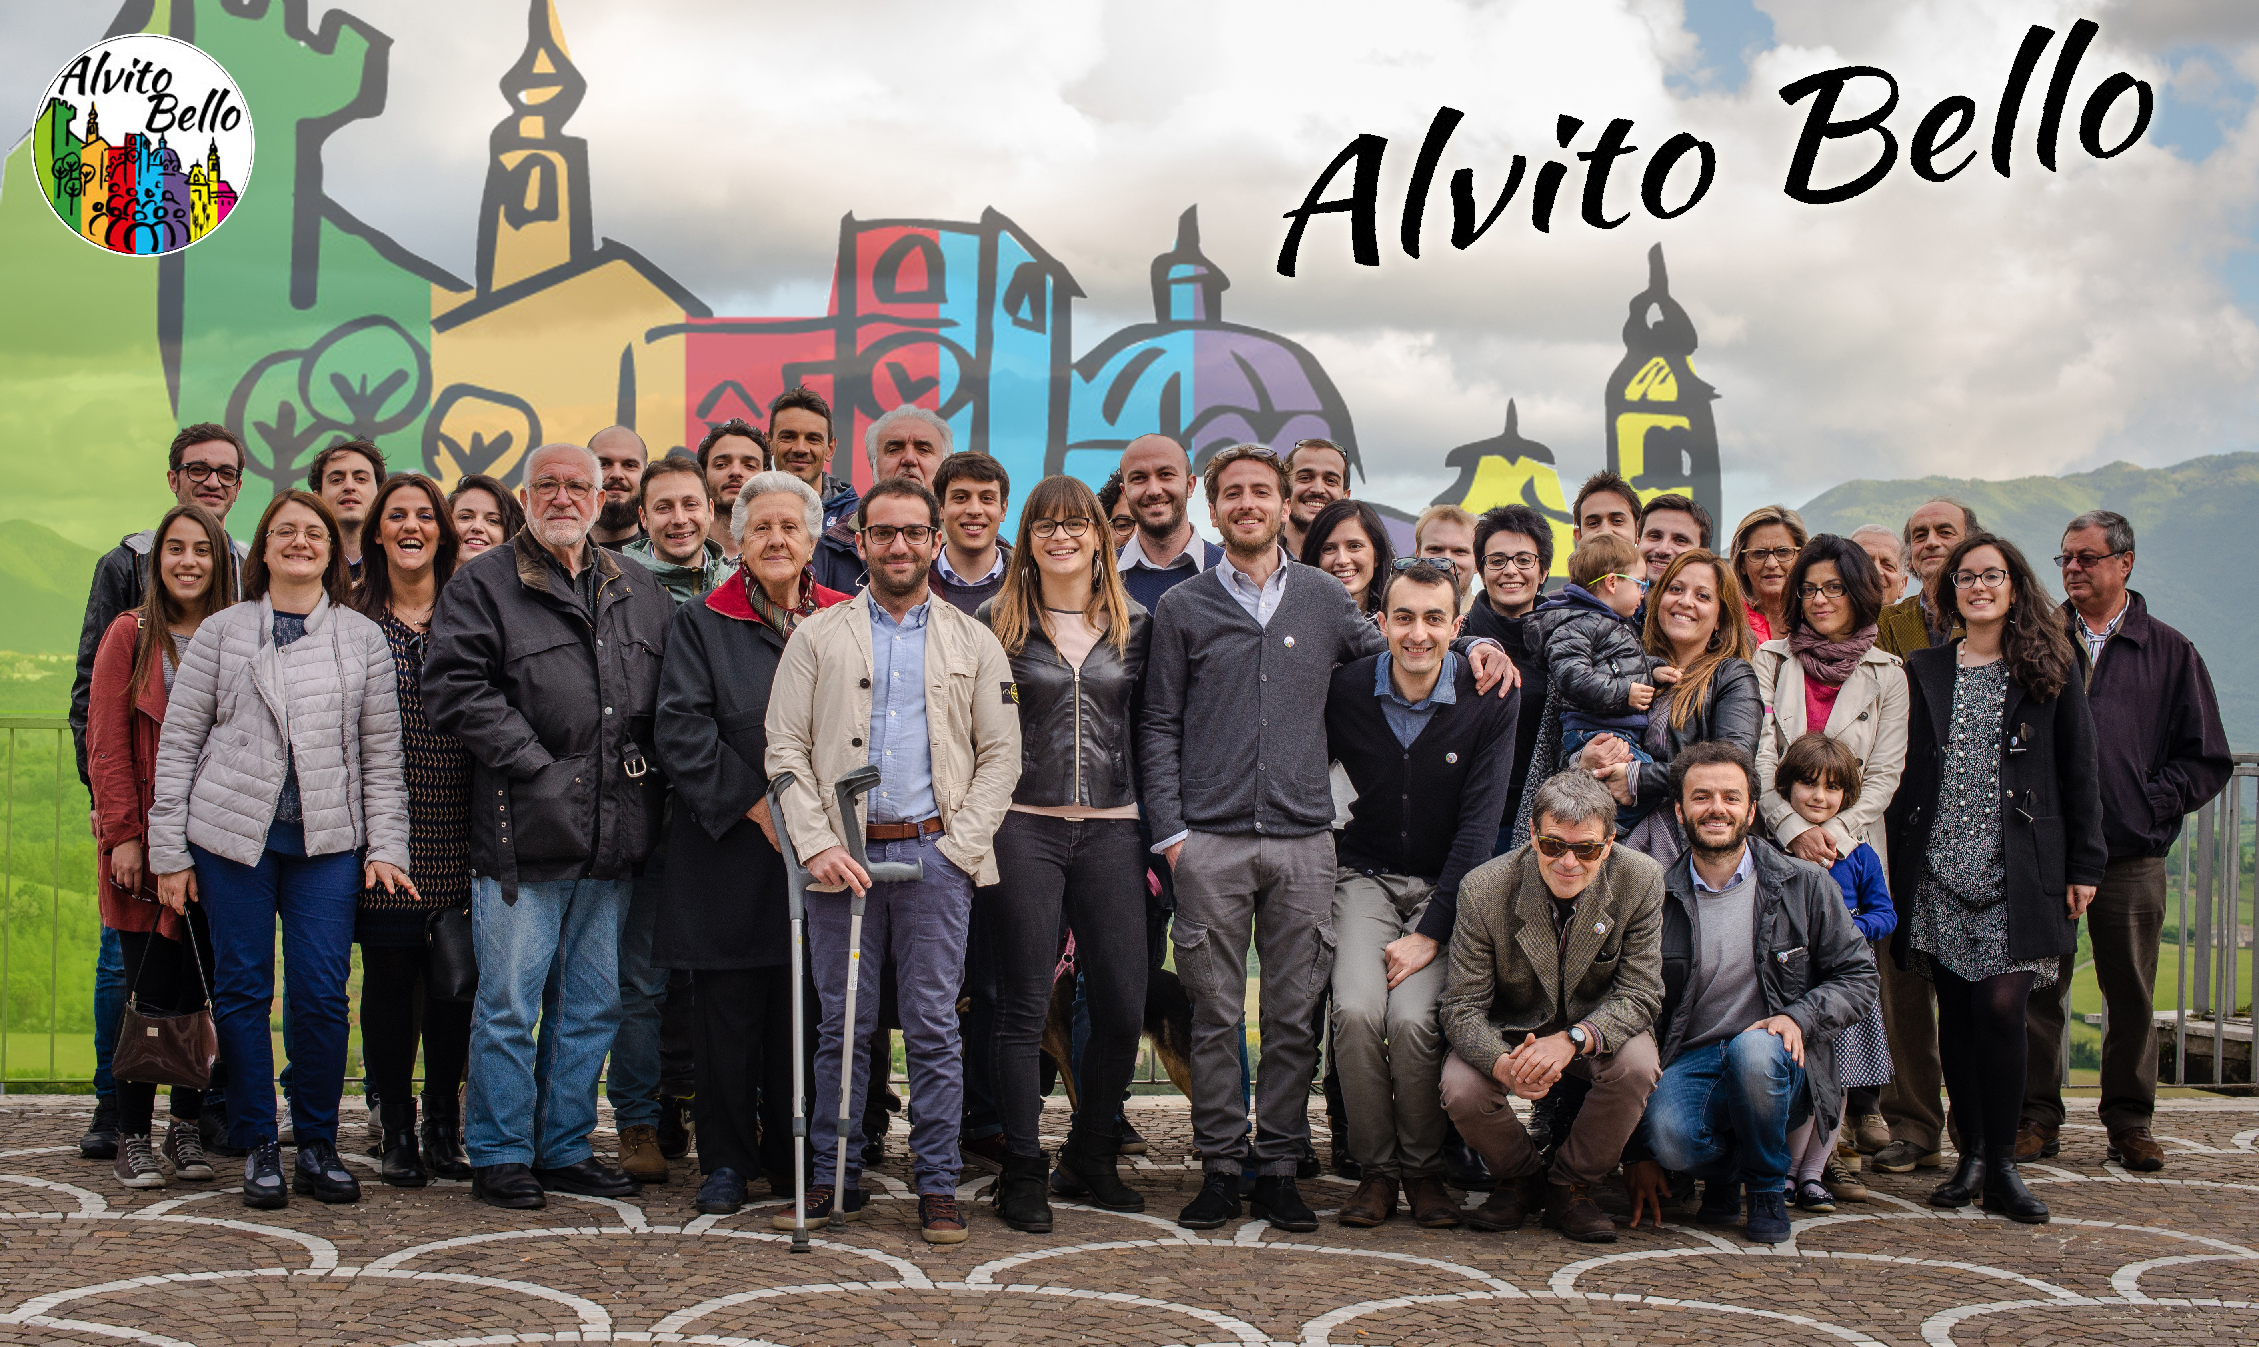 Lista Civica "ALVITO BELLO": per Alvito, con Alvito